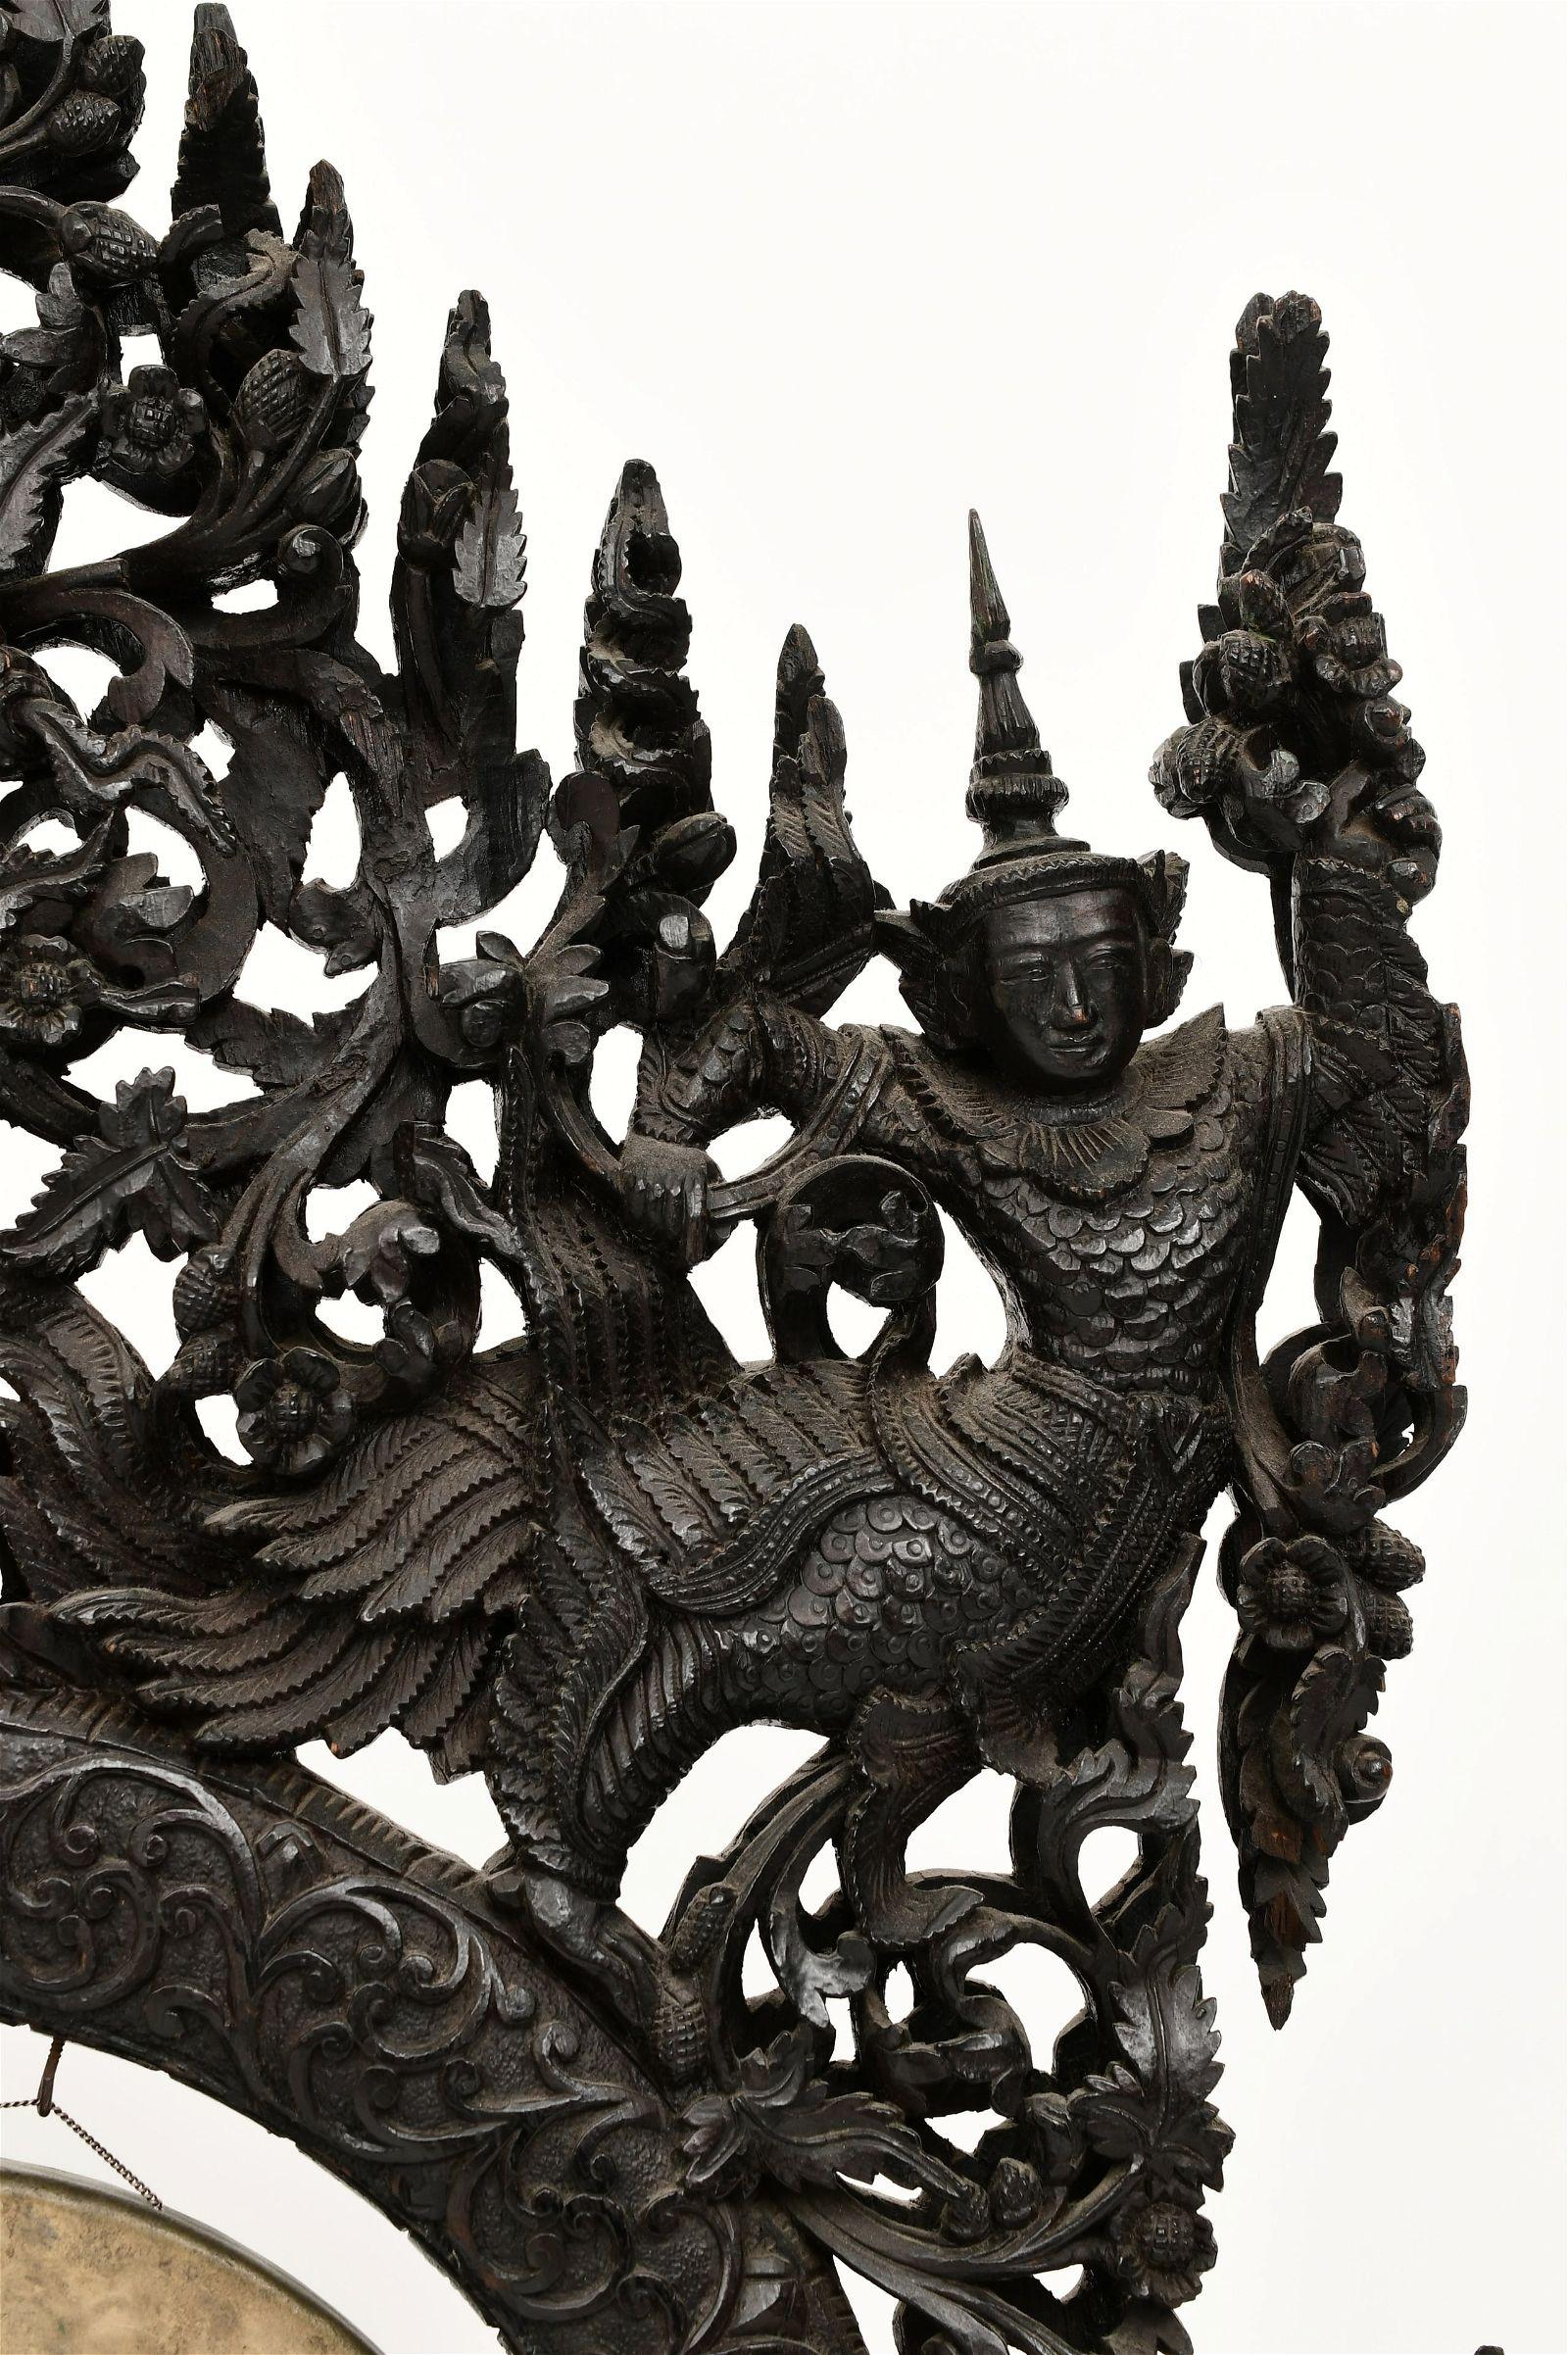 Gong de cérémonie du 19e siècle avec d'exquises sculptures de dragons, de figures mythologiques, de motifs feuillus et floraux et d'une figure assise au centre.